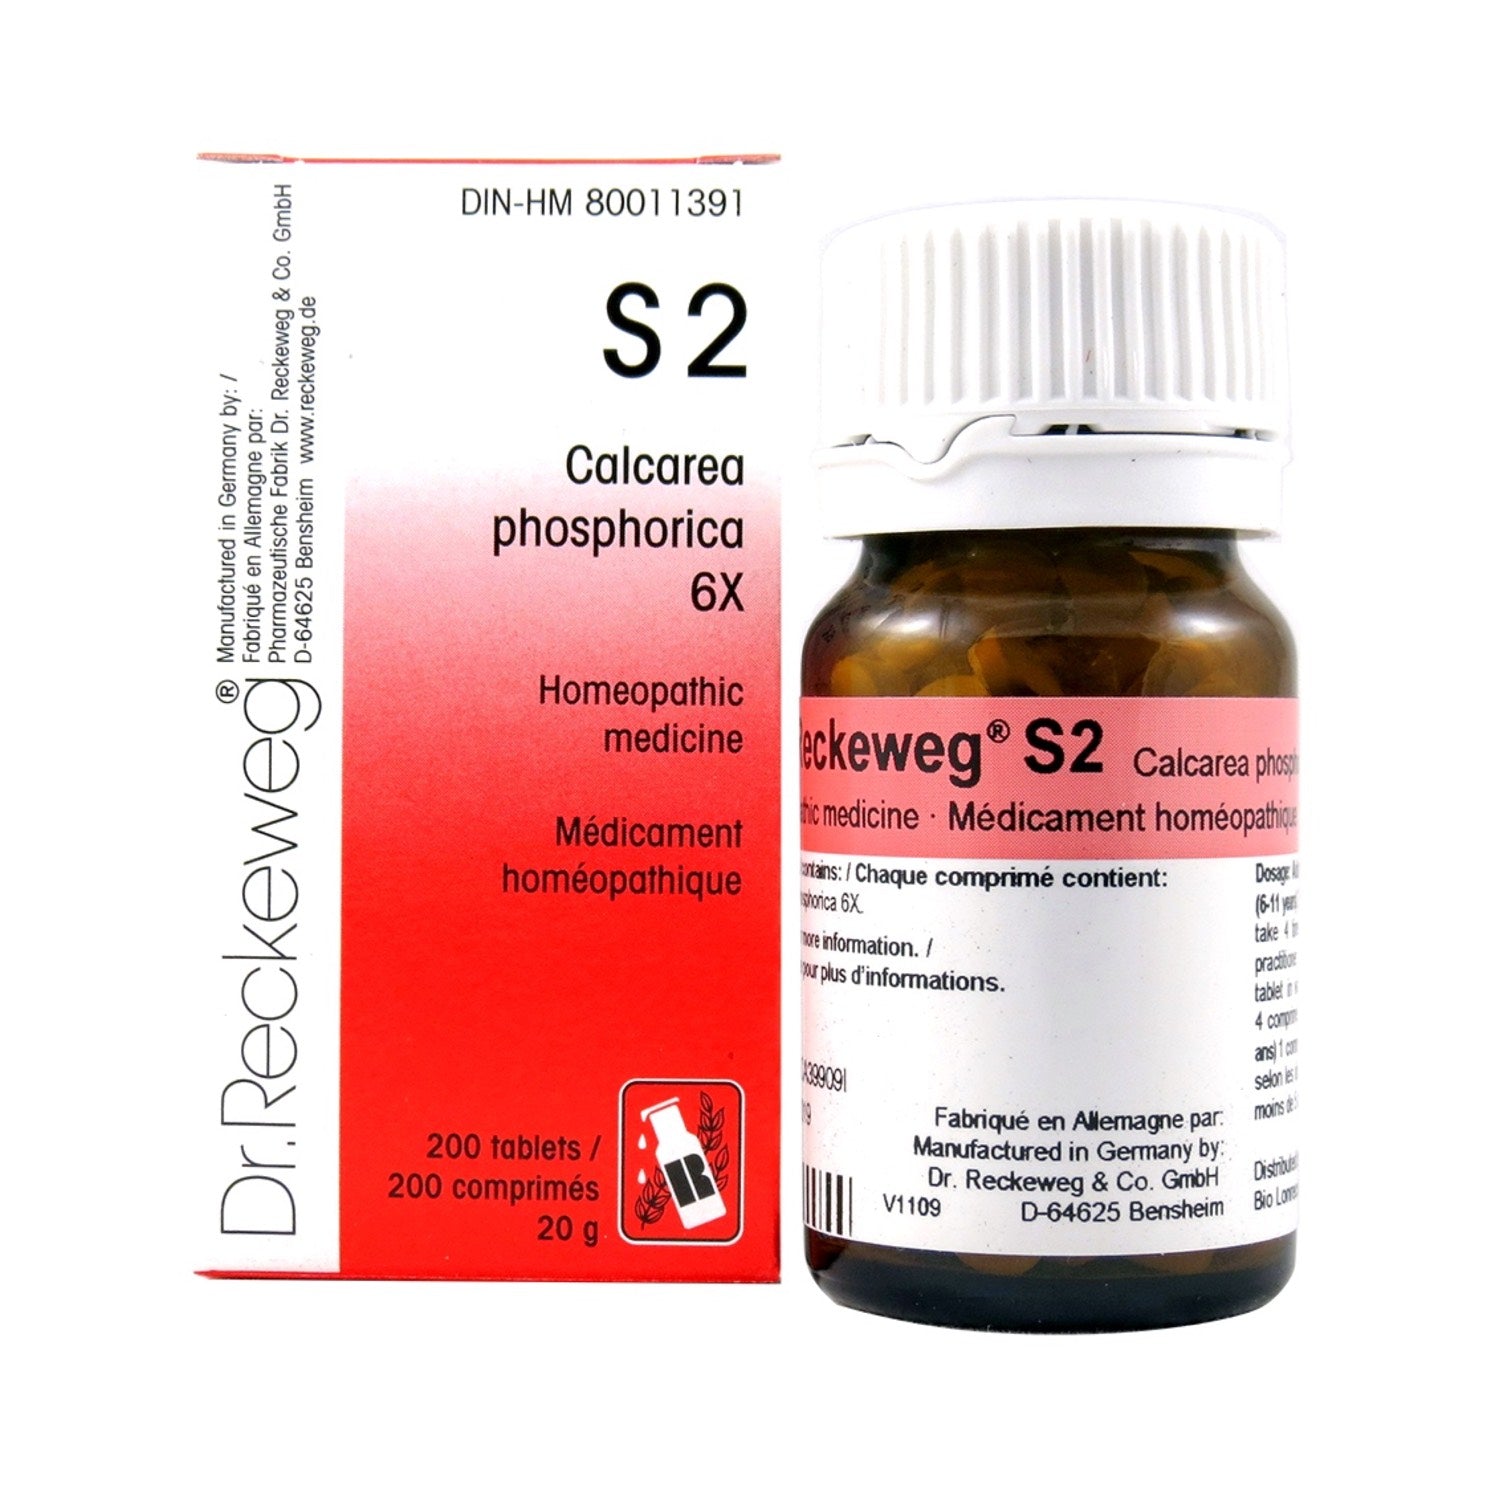 S2 Calcarea phosphorica, proper groweth and nutrion, Schuessler salt  6X 200 tablets (20 g)